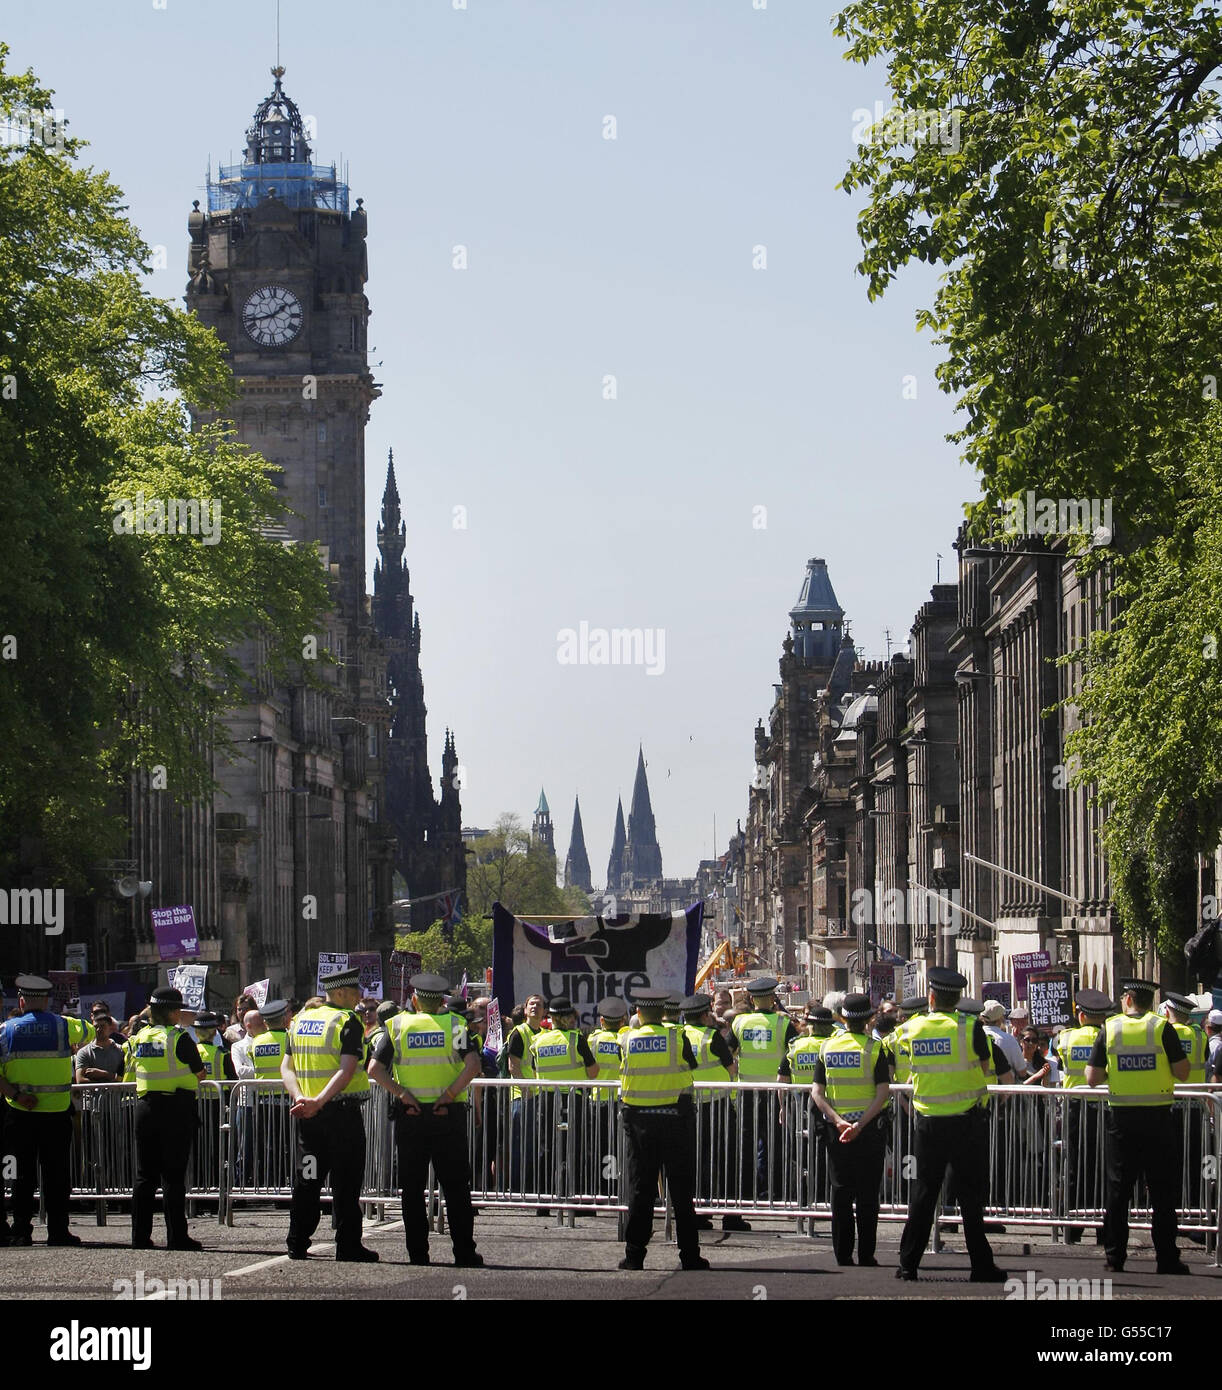 Miembros de la Unid Against Fascism durante una manifestación en Edimburgo. Foto de stock